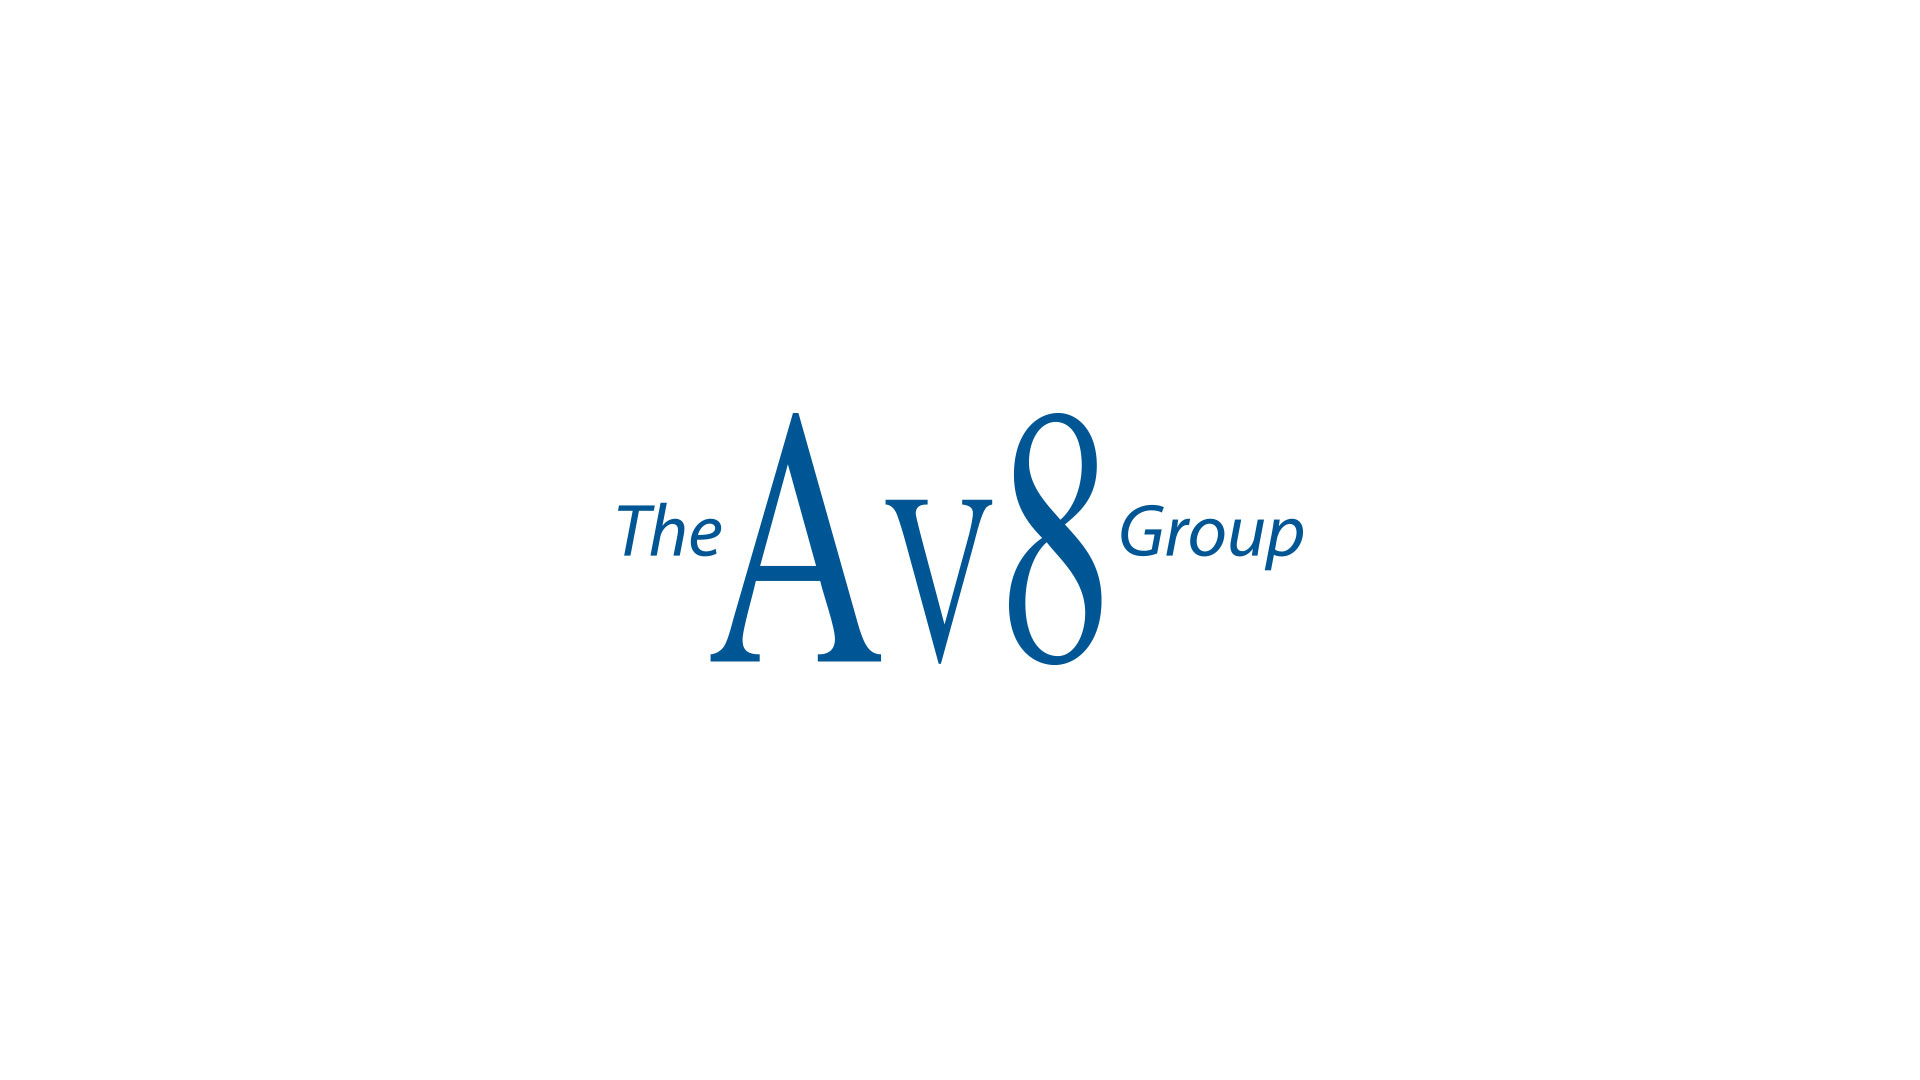 Av8 Group